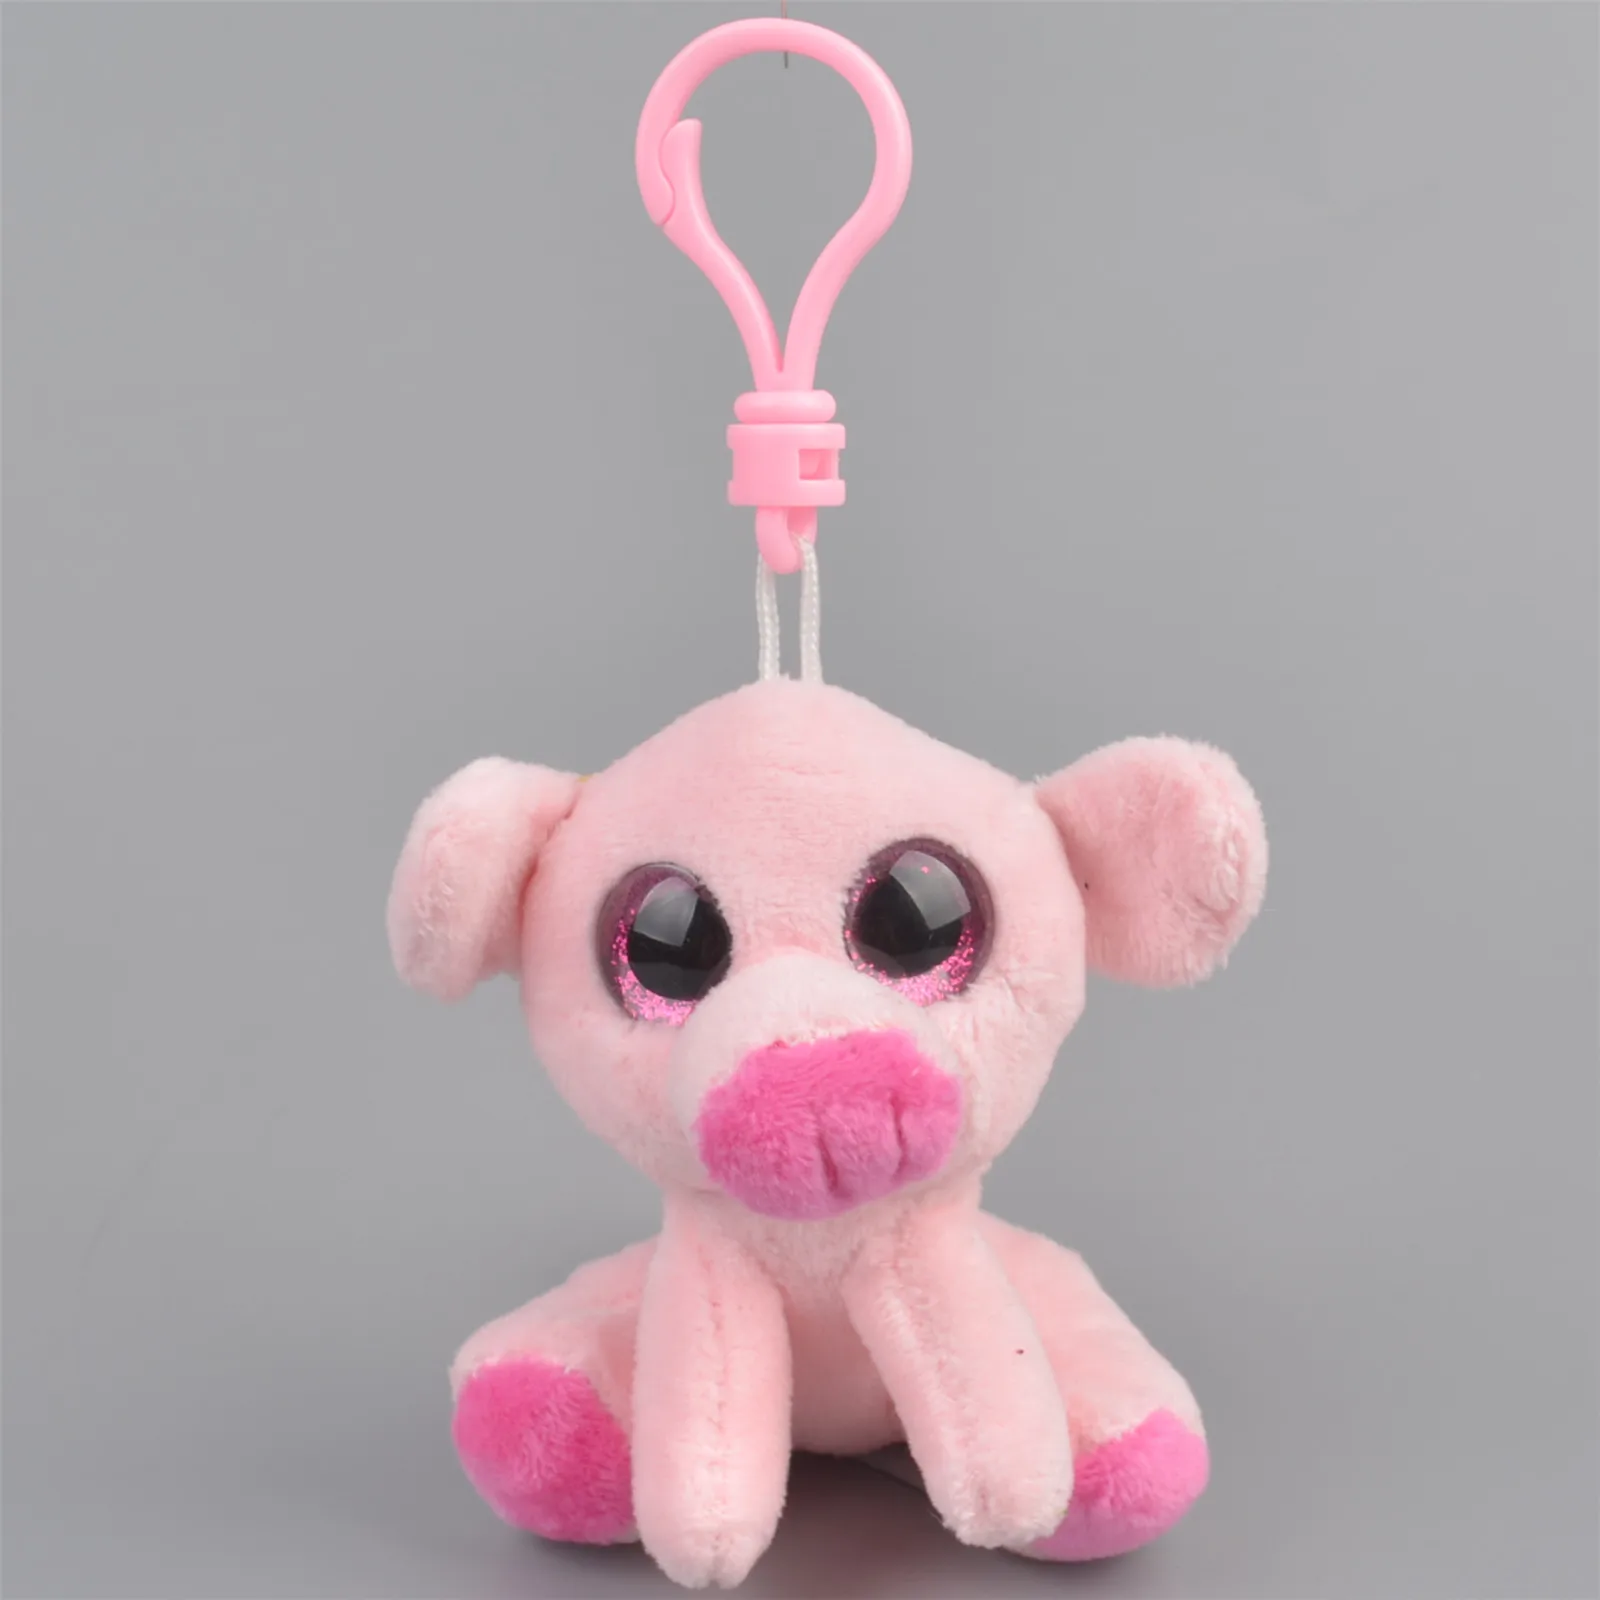 

10cm Cute Pig Key Chain Doll Toy Keychain Wild boar Toy Keyring Pendant Bag Car Key Holder Cute pendant keychain